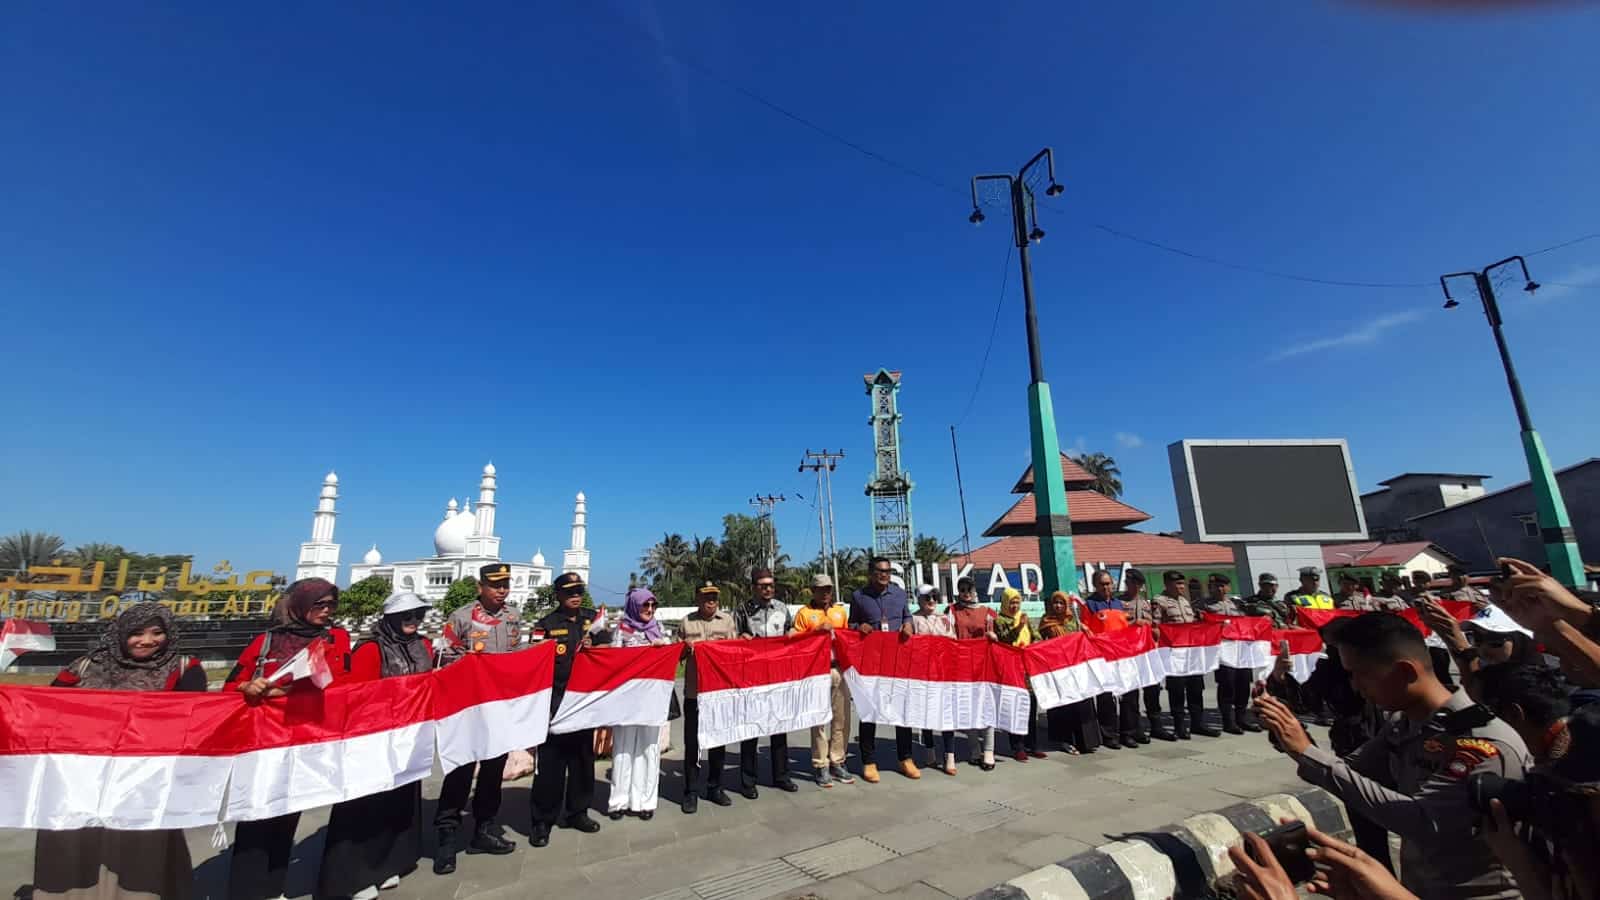 Pembagian bendera merah putih oleh Bupati Kayong Utara dan Forkopimda serta OPD terkait di Simpang Tugu Durian, Kecamatan Sukadana. (Foto: Santo)